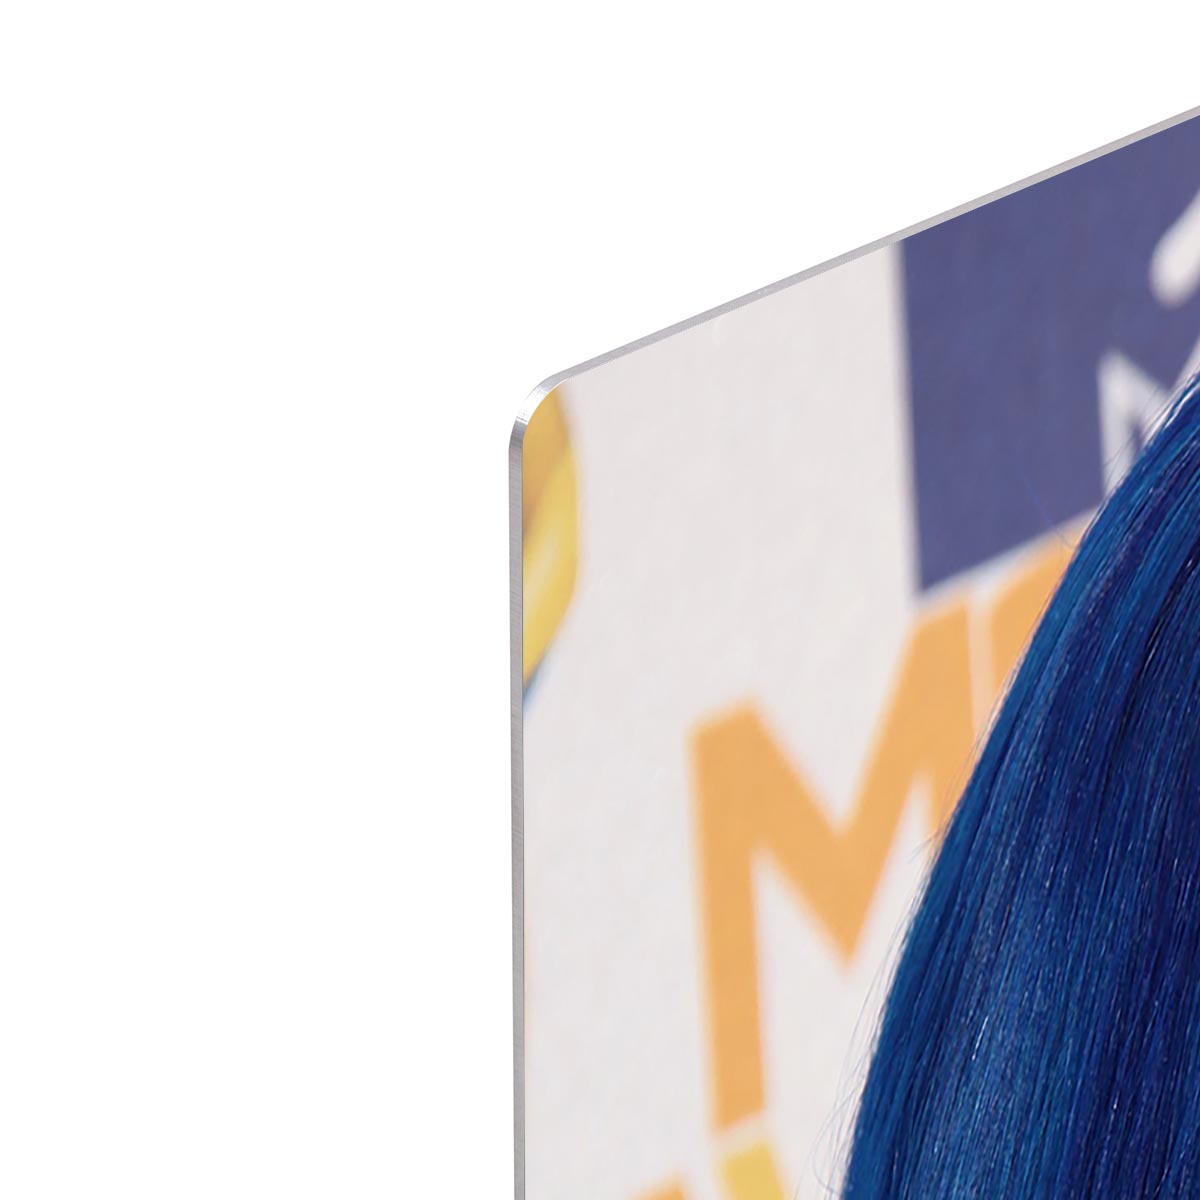 Katy Perry in blue HD Metal Print